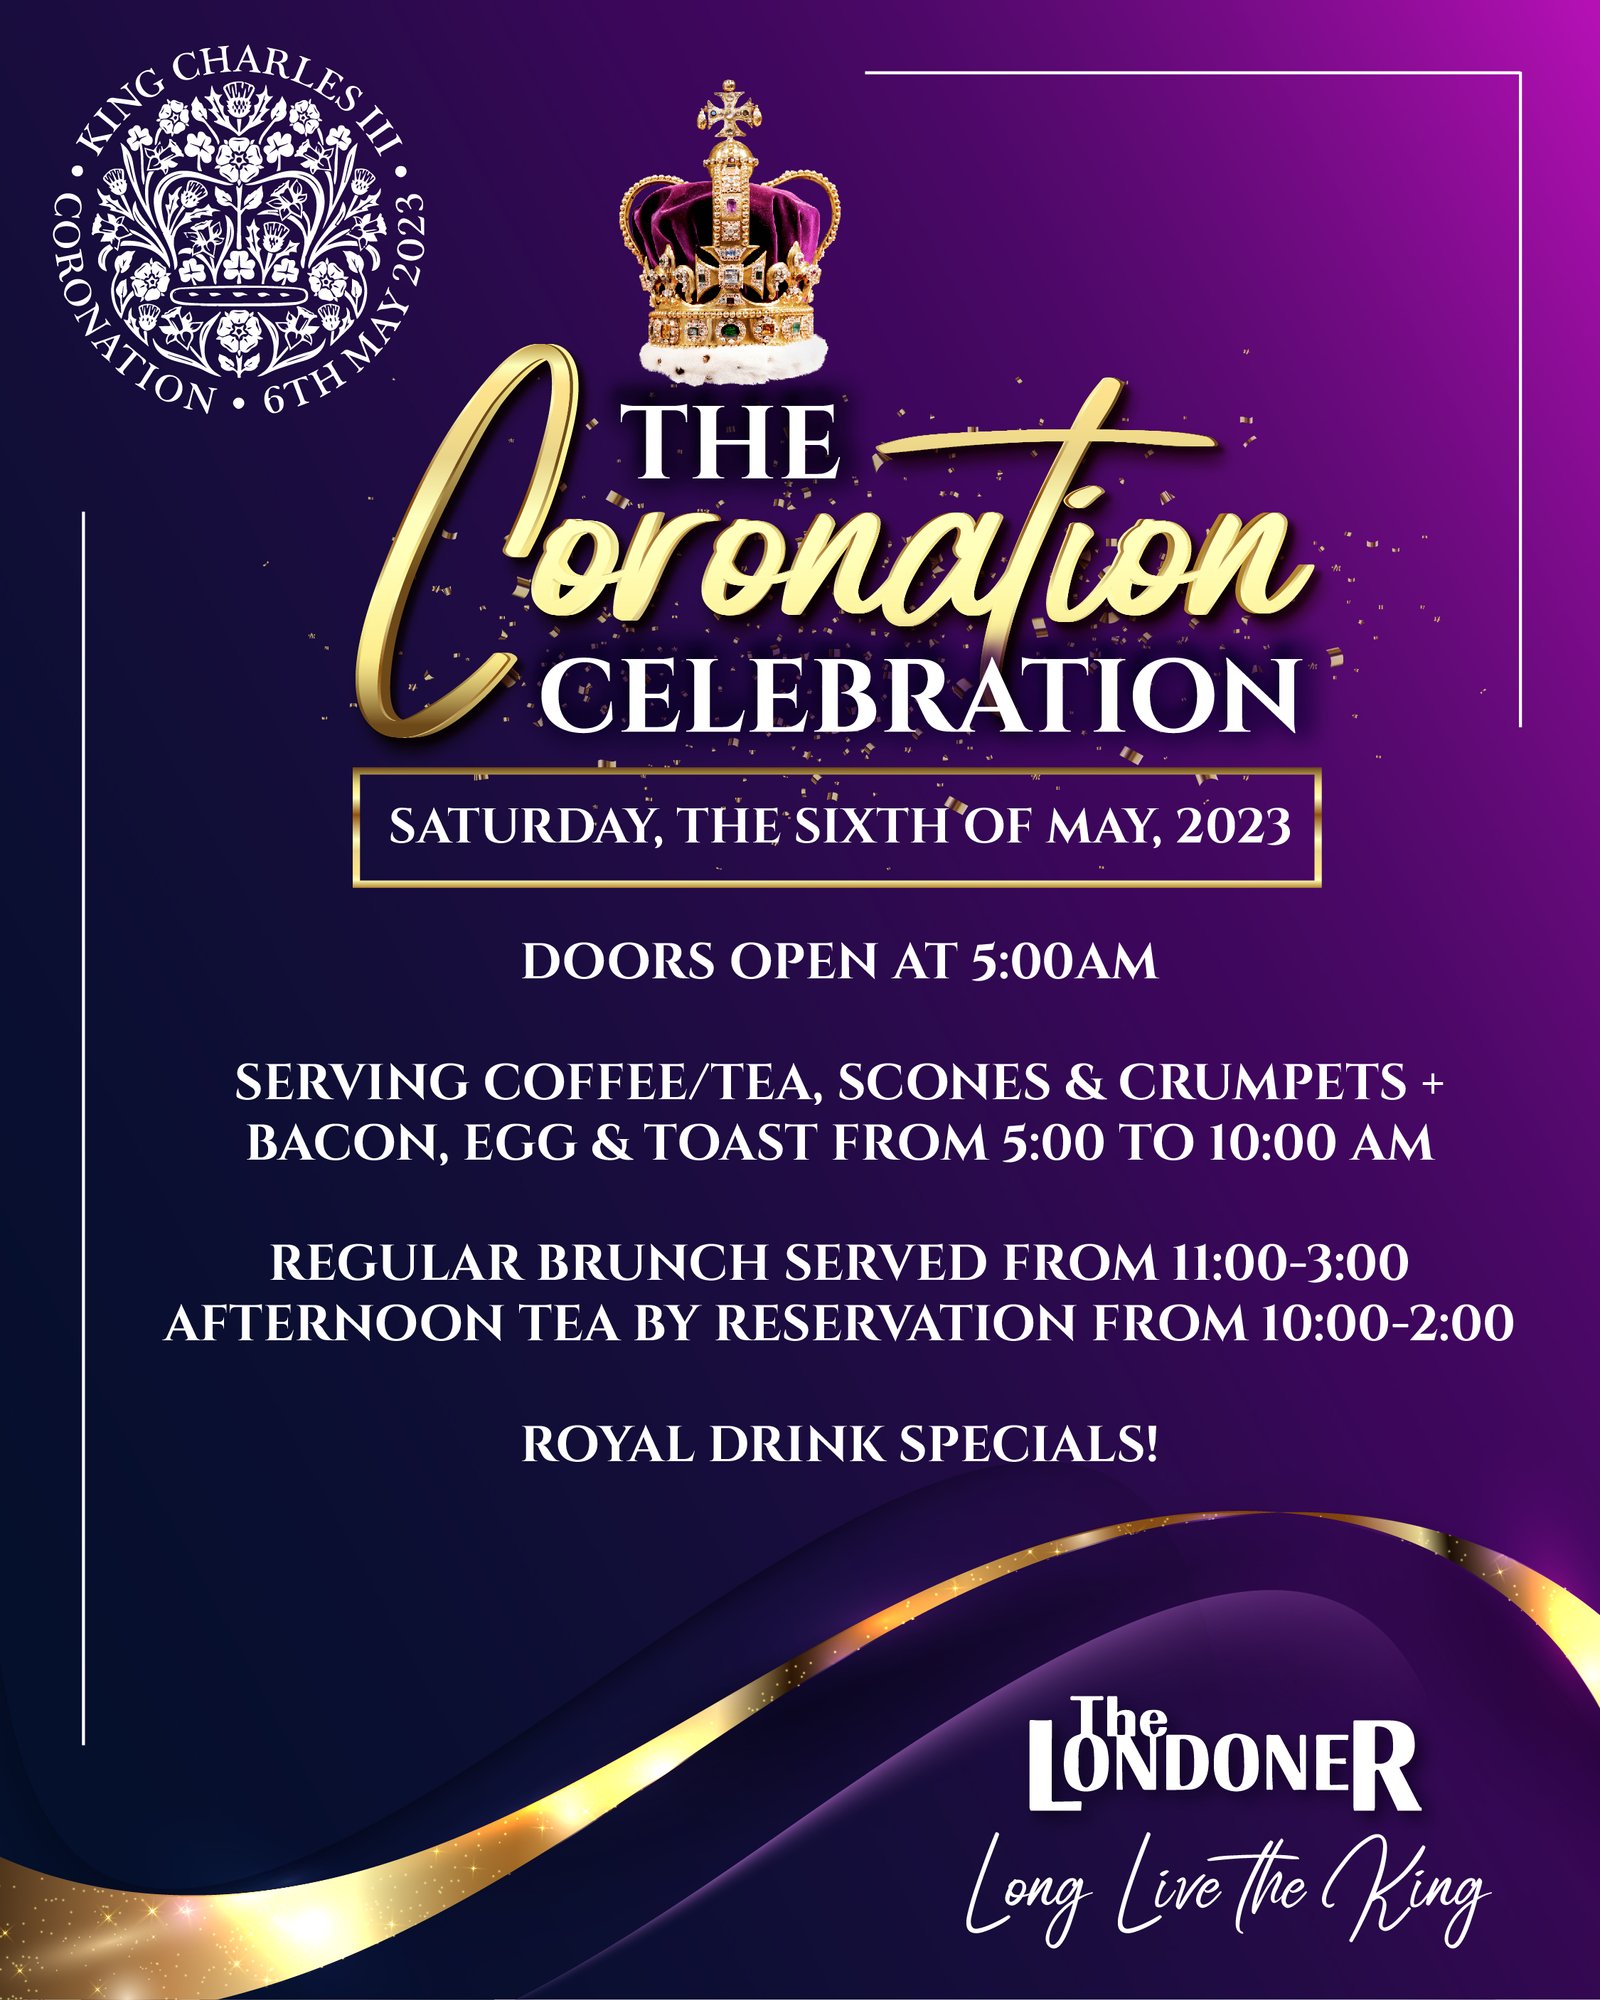 Coronation Celebration promotion